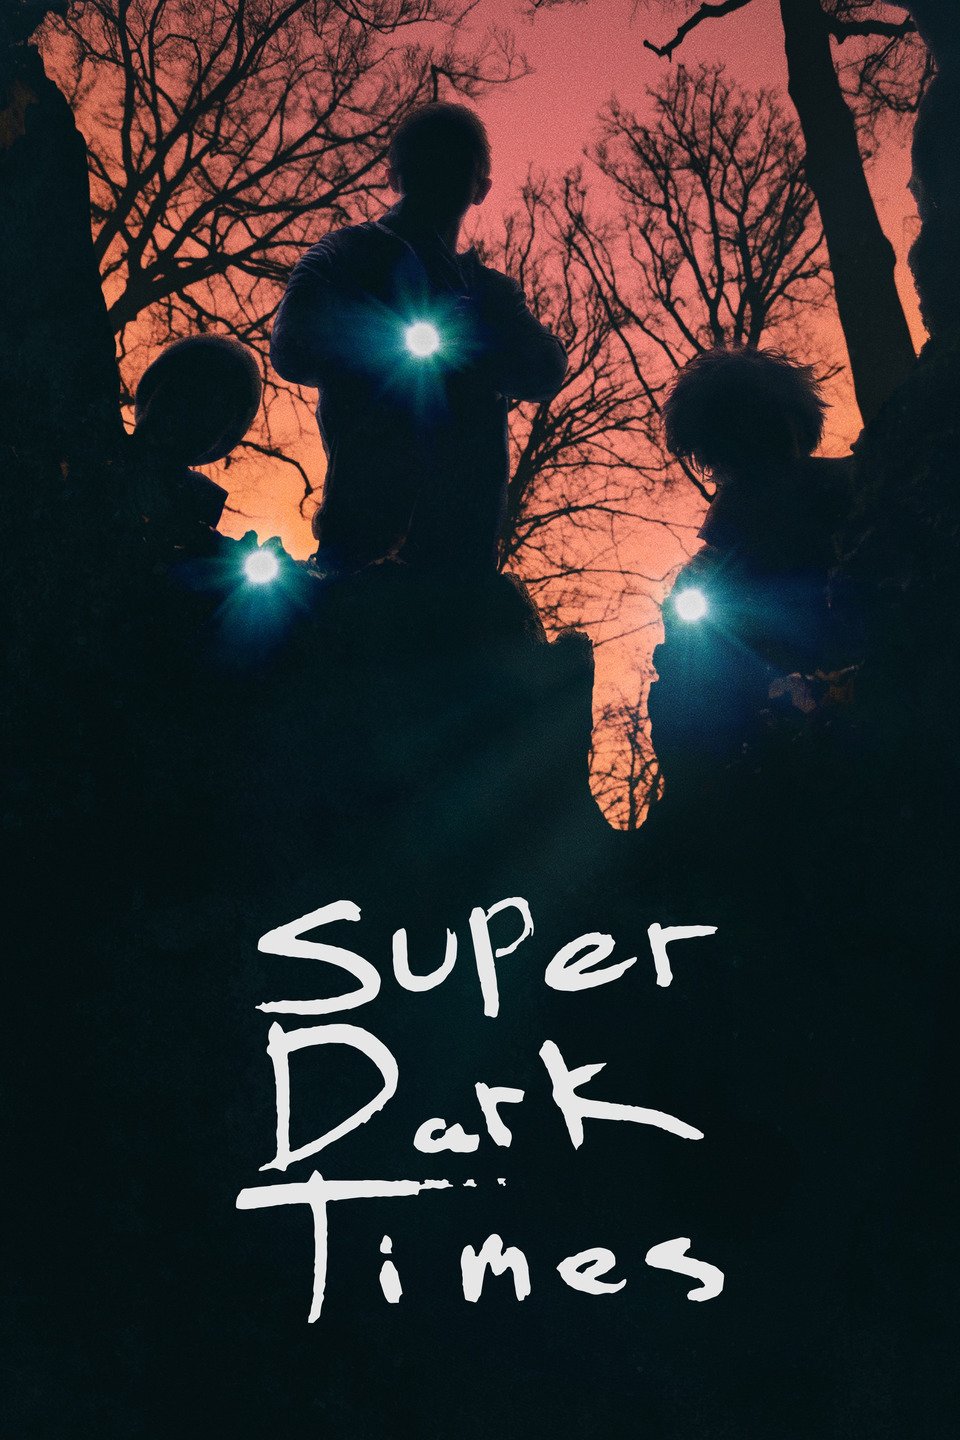 [ฝรั่ง] Super Dark Times (2017) [1080p] [Master] [พากย์อังกฤษ 5.1] [DTS.SUBThai.x264] [Soundtrack บรรยายไทย] [ซับไทย] [ONE2UP]